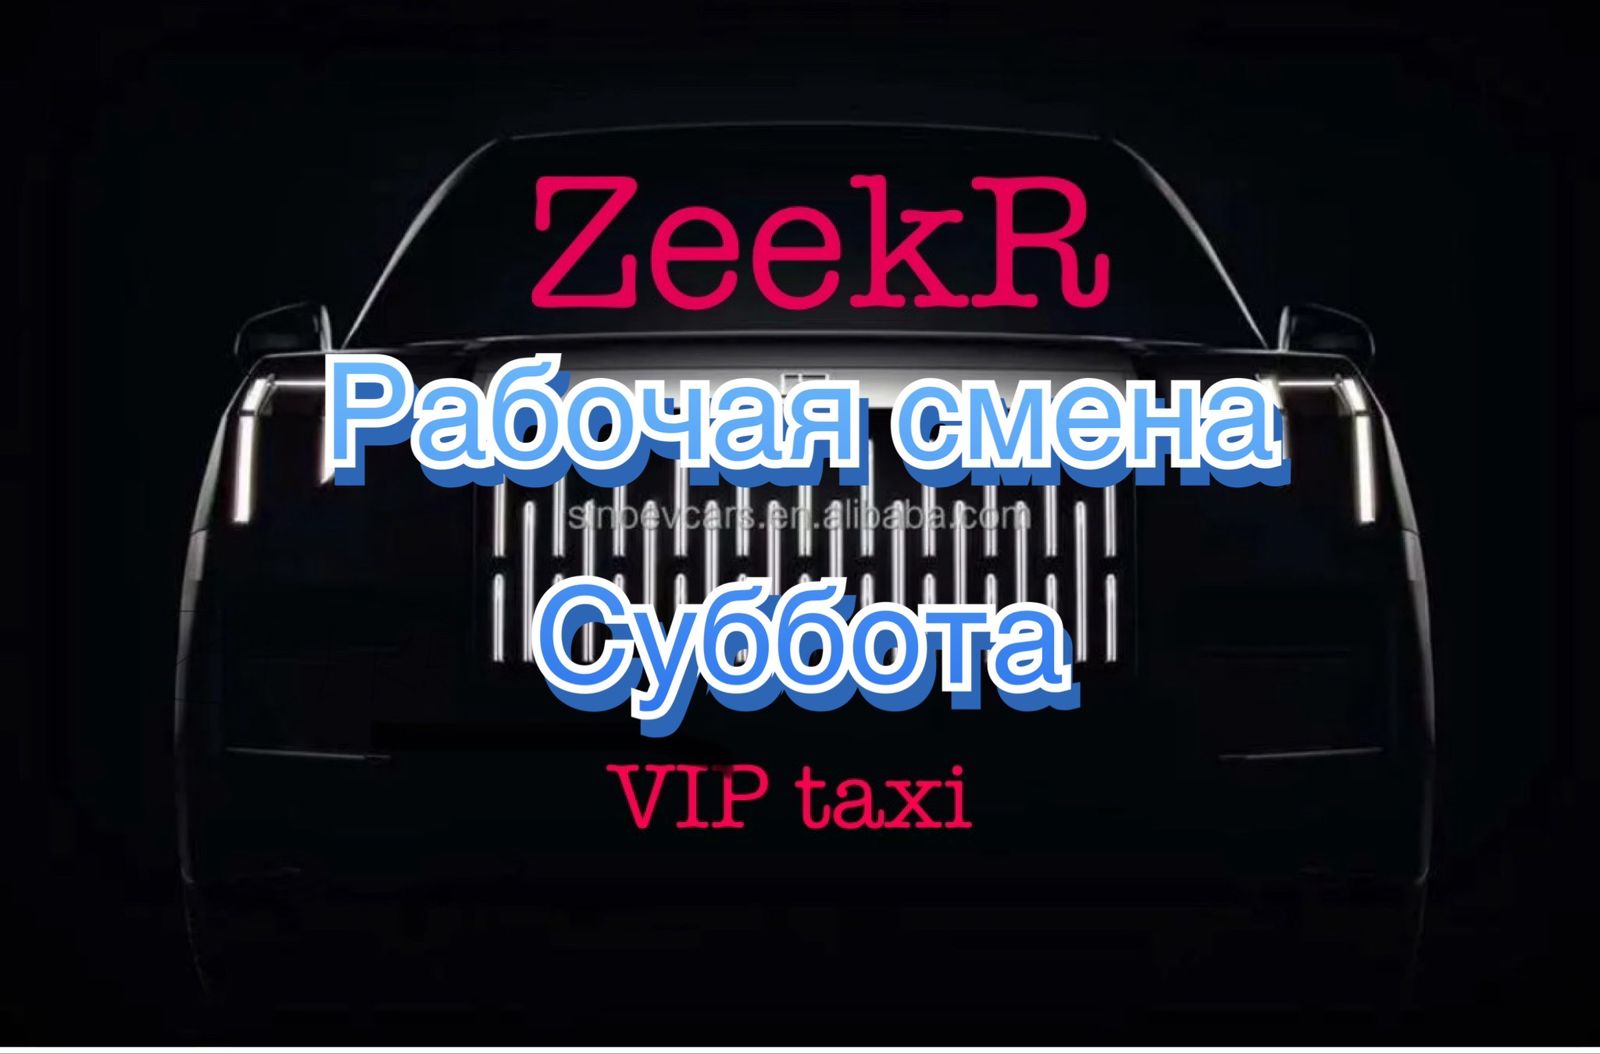 на расслабоне в элит/таксую на zeekr009/elite taxi/яндекс такси#elite #taxi #vip #zeekr #yandextaxi